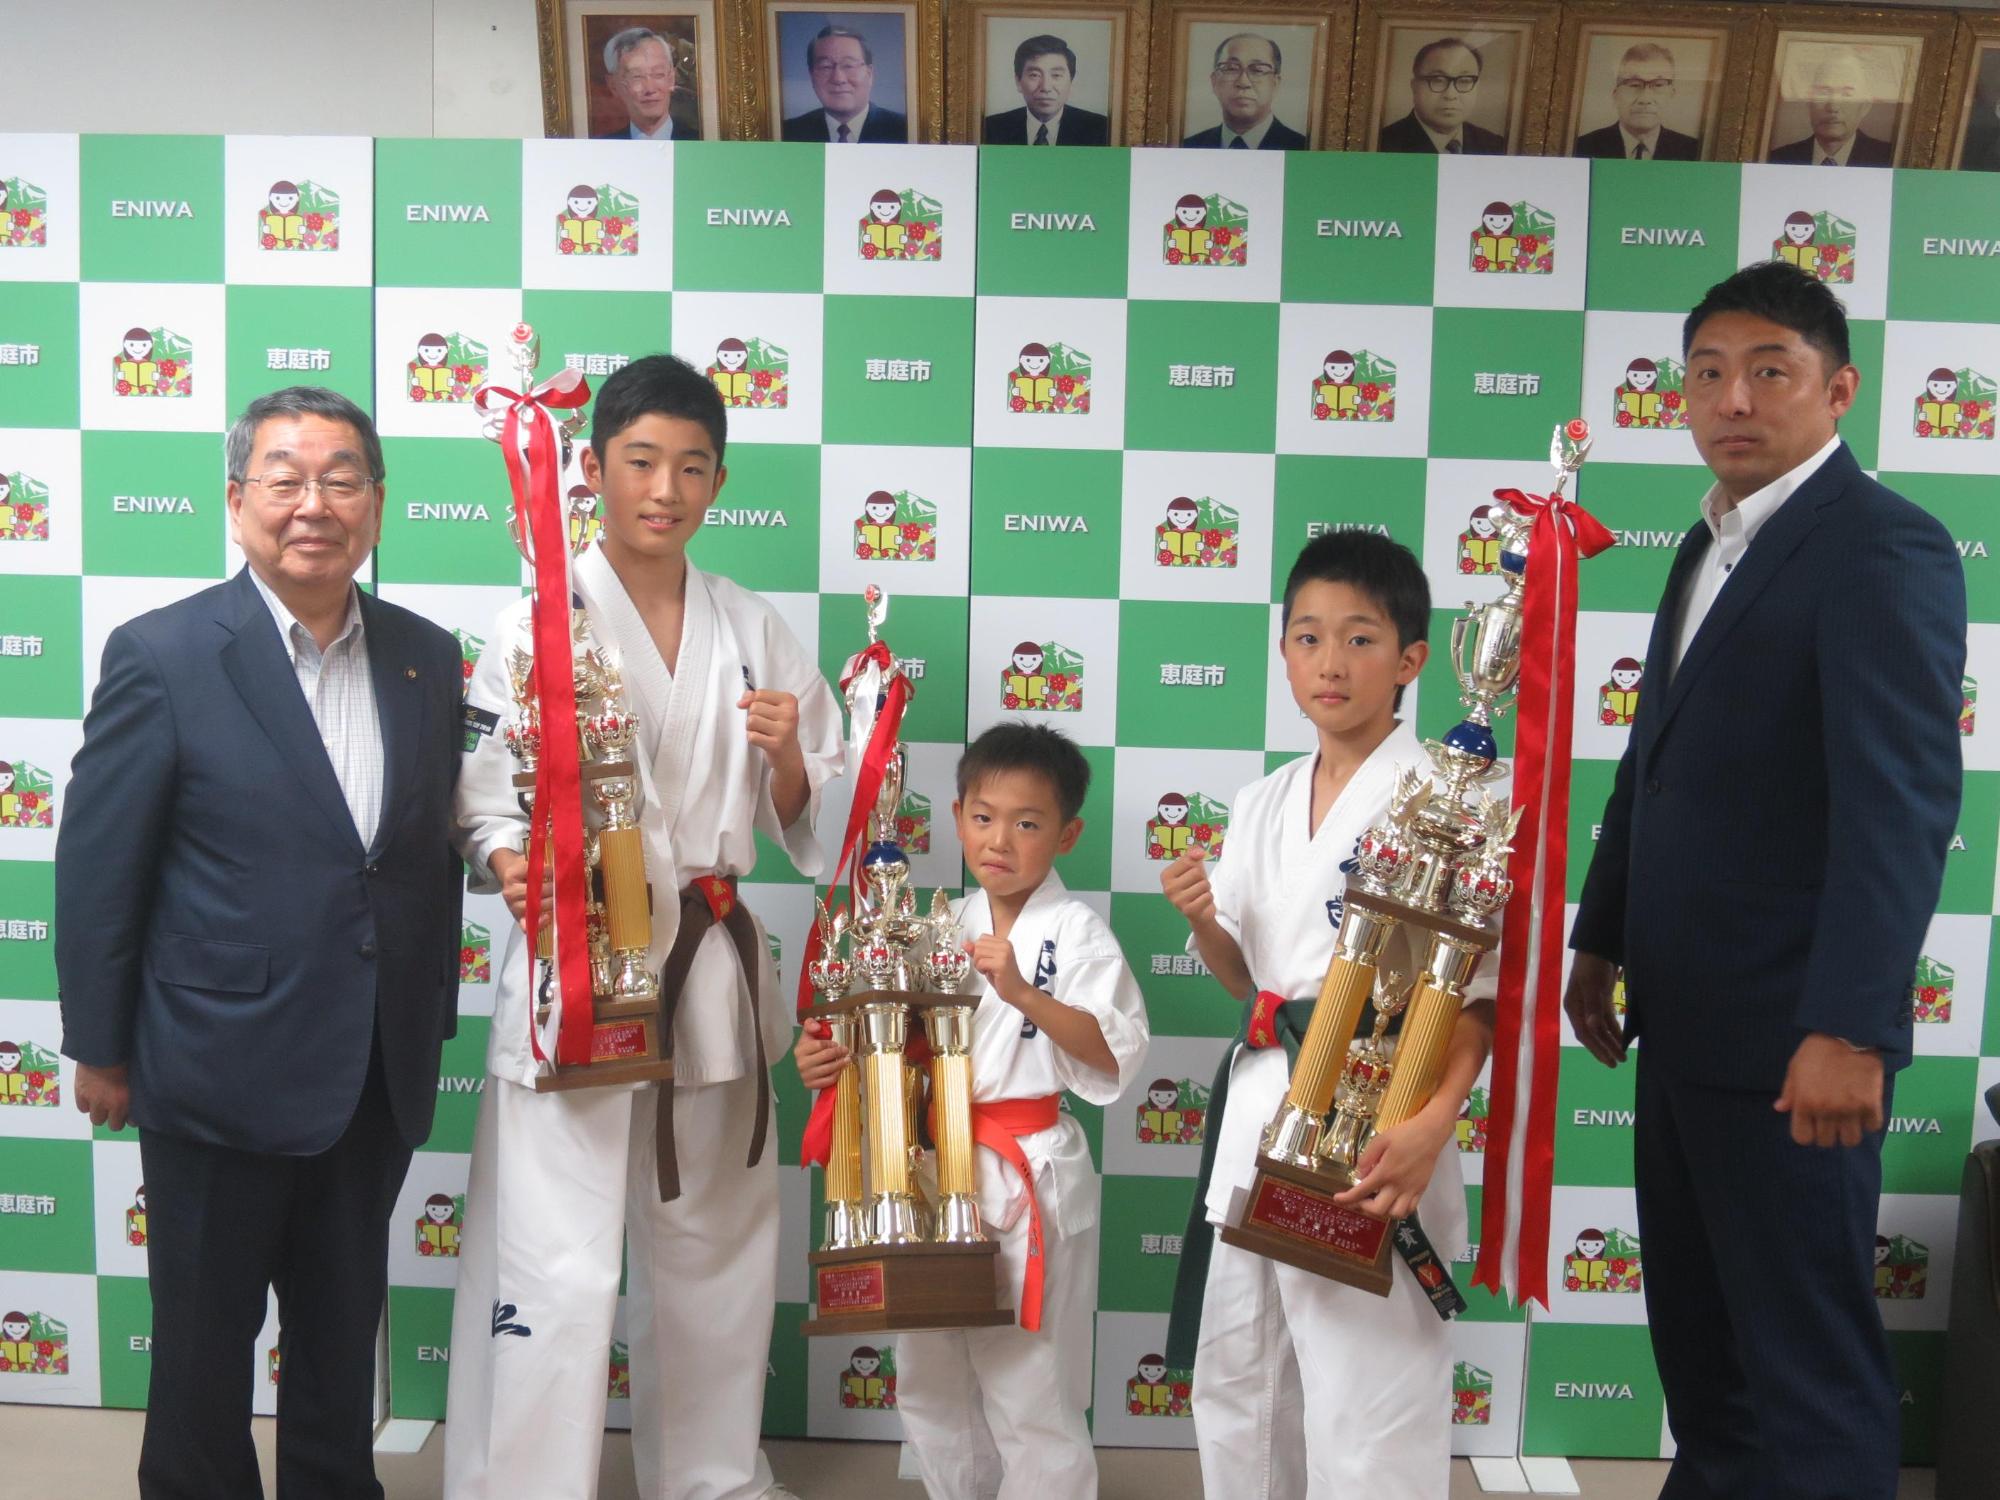 結果報告に訪問した武仁拳上野道場の3選手と原田市長の記念写真